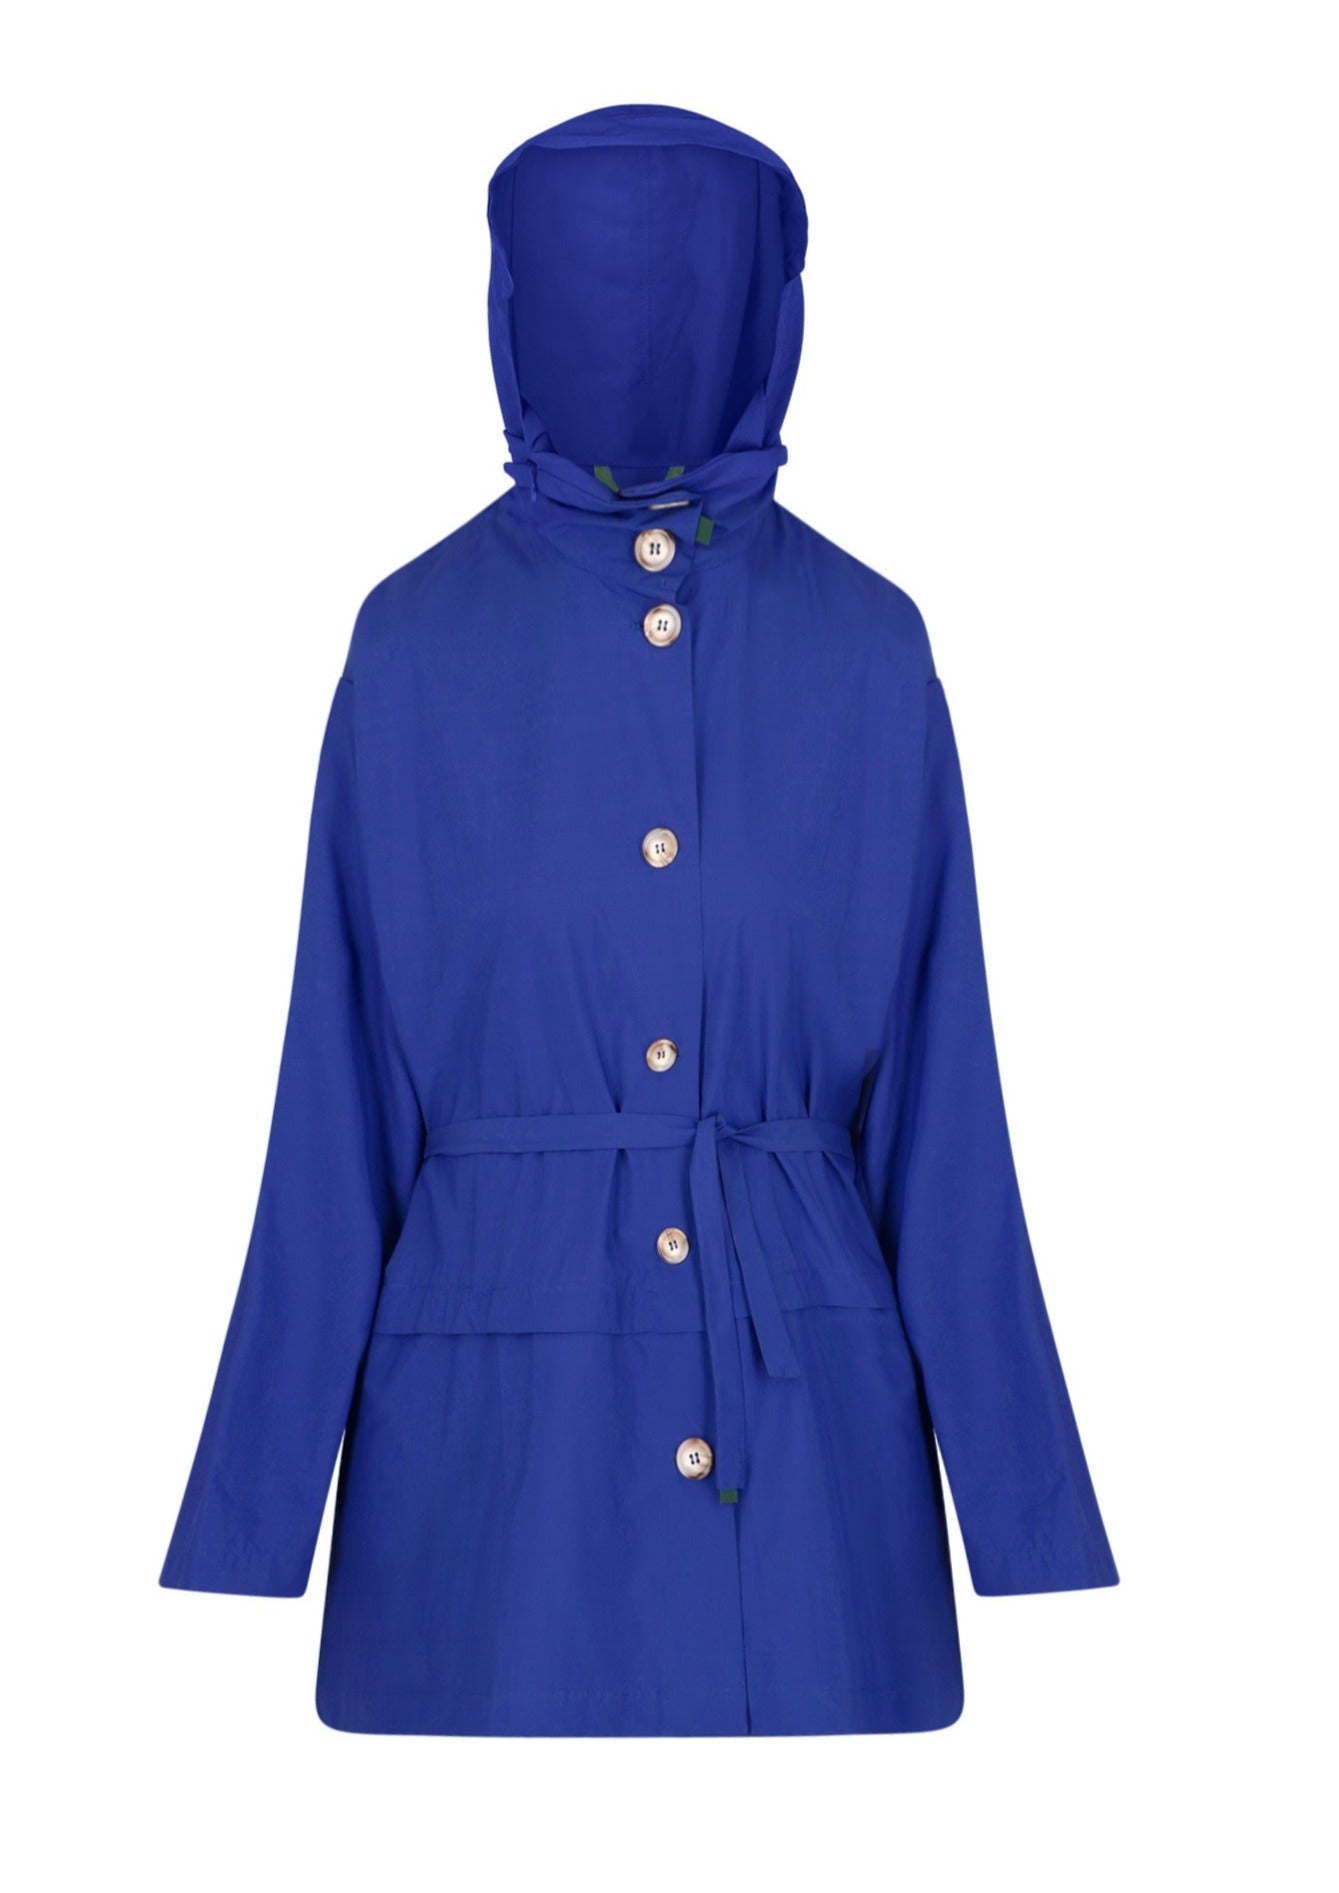 Bise raincoat - Royal Blue color - front view